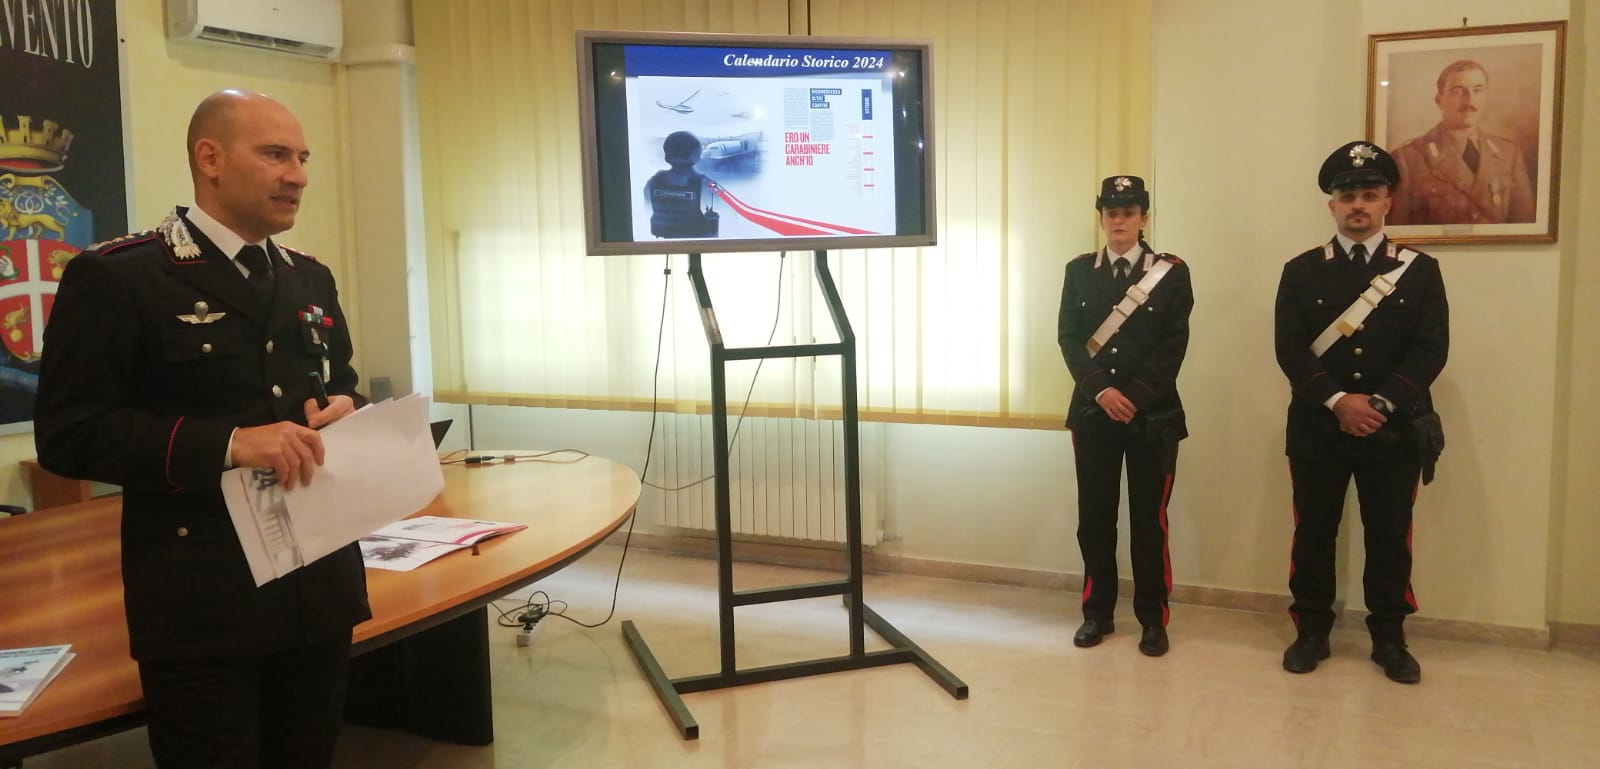 I Carabinieri e le Comunità: presentato il Calendario Storico